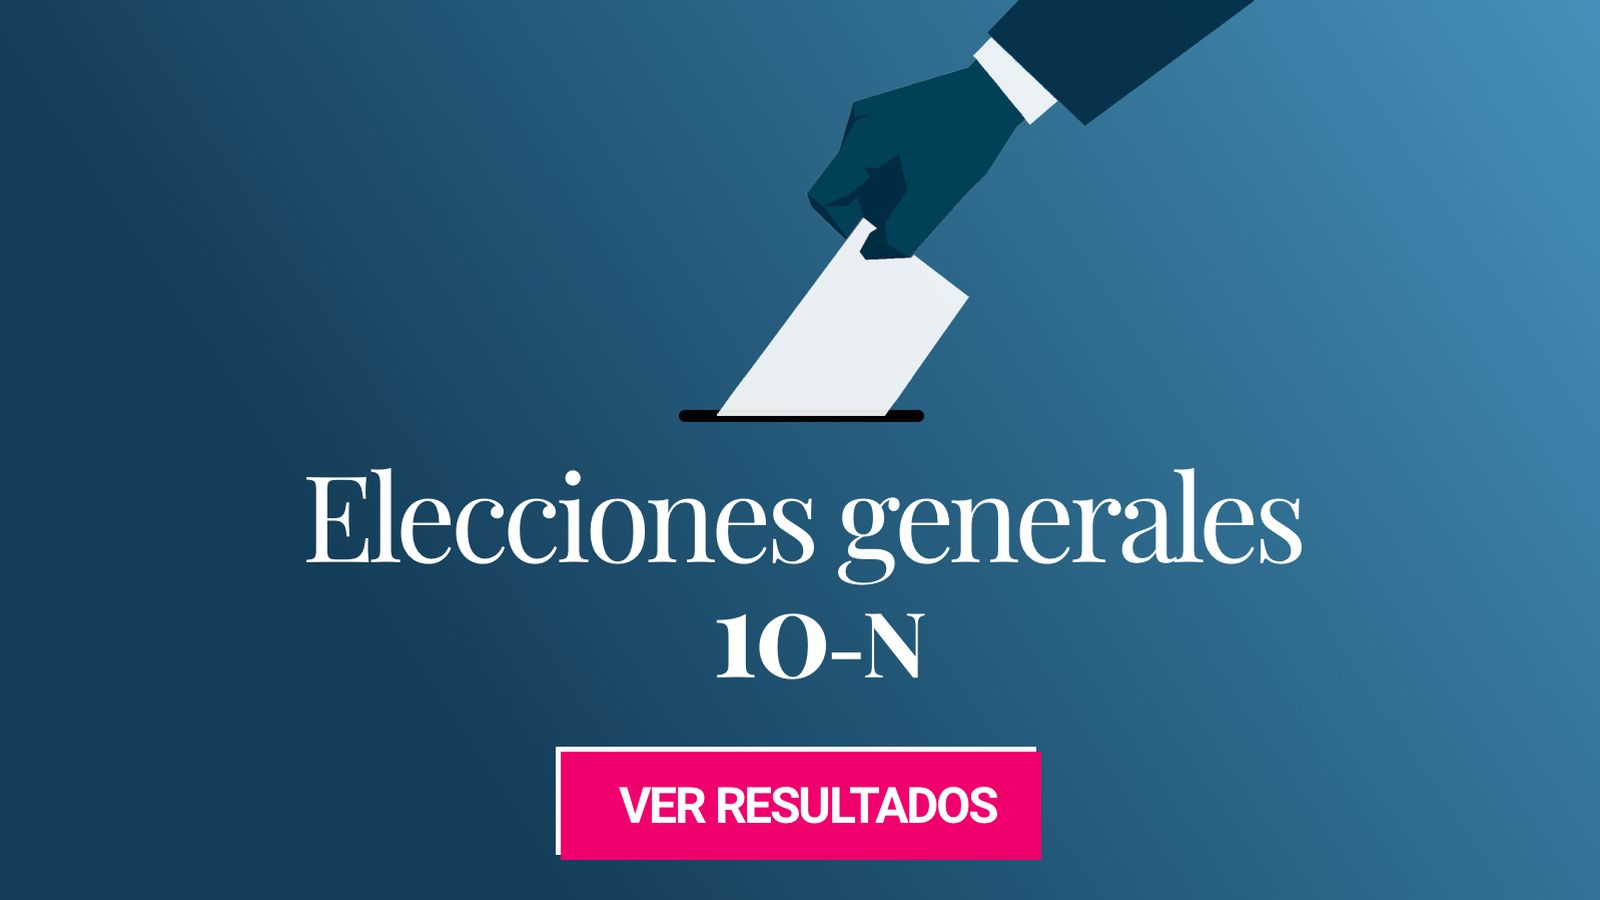 Foto: Elecciones generalaes 2019. (C.C./EC)